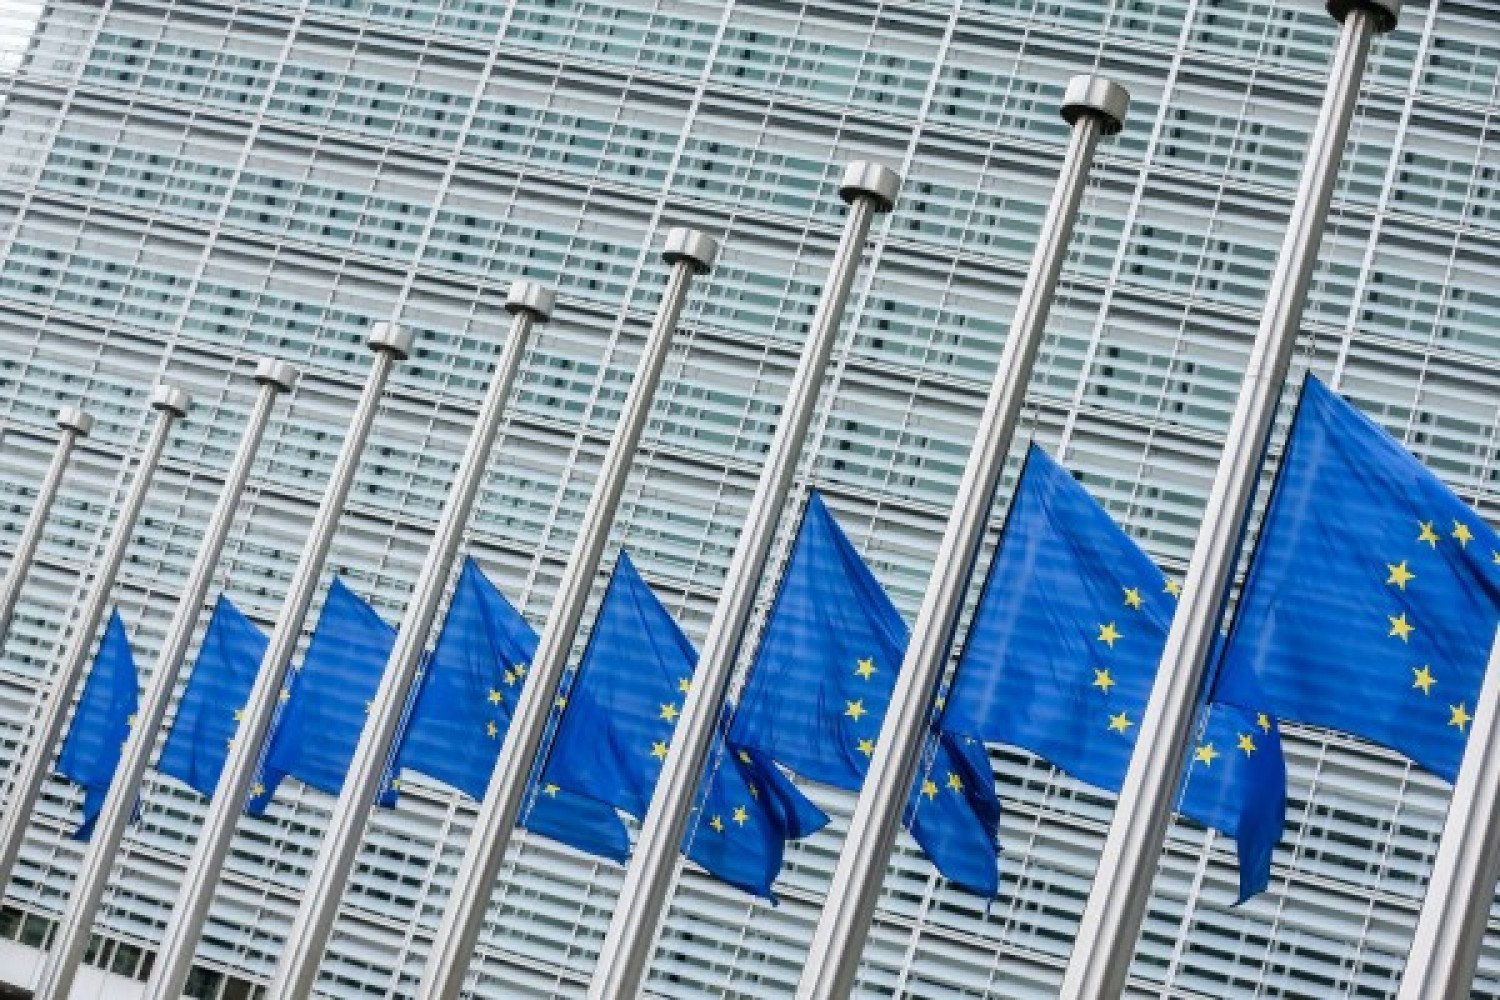 Εκτακτη συνεδρίαση των ΥΠΕΞ της ΕΕ - Θα ανακοινωθούν πιο σκληρές οικονομικές κυρώσεις